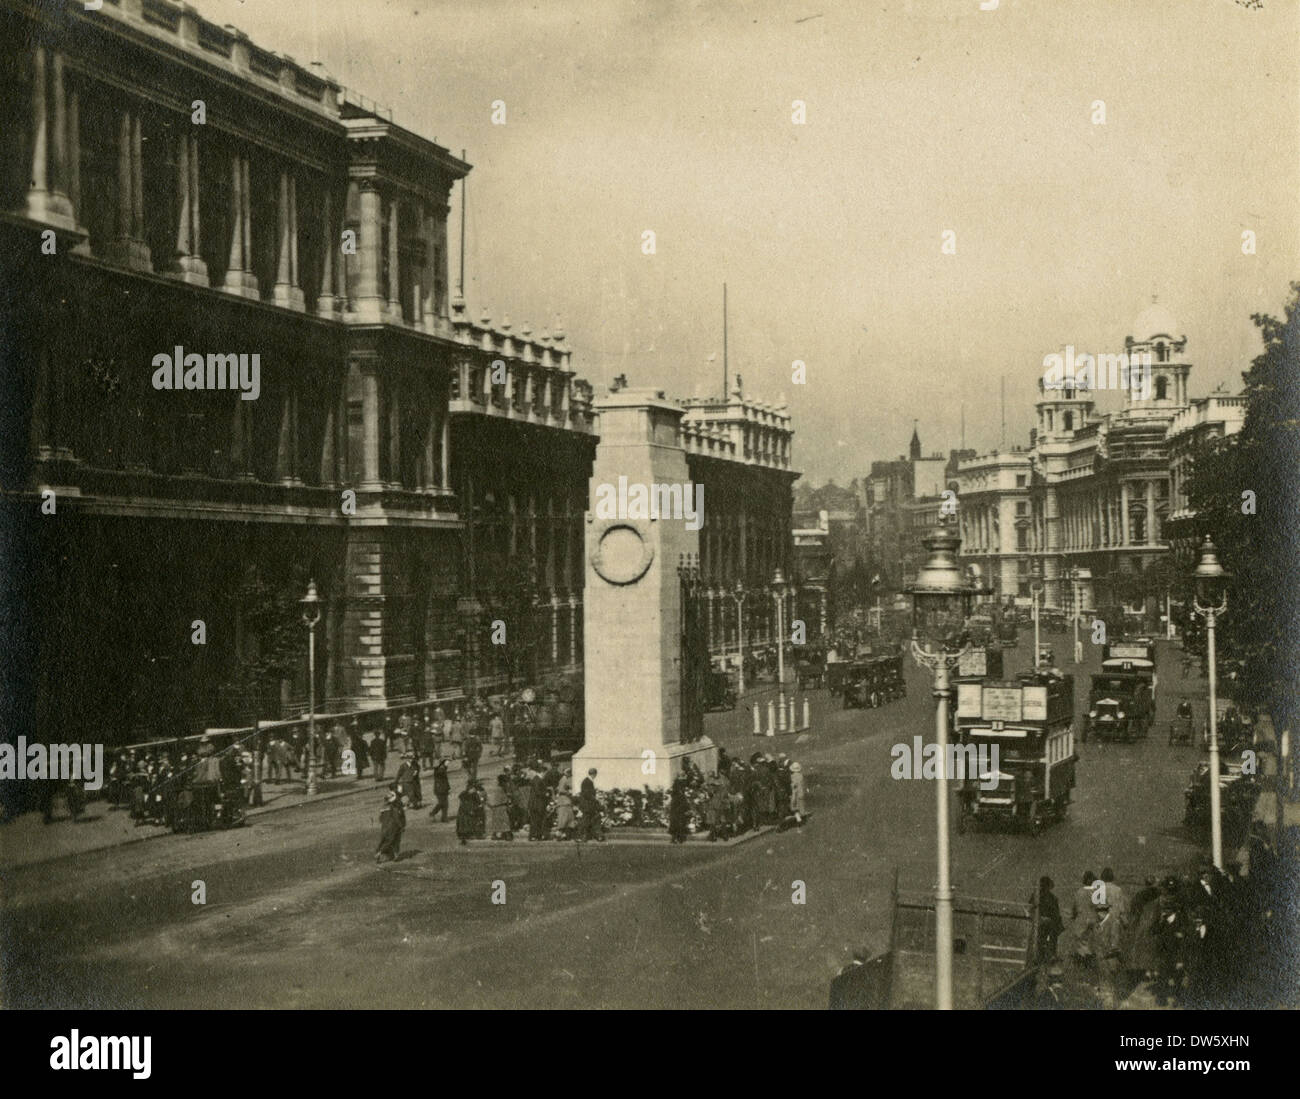 Ca. 1920-Foto von der Kenotaph in Whitehall, London, England. Stockfoto